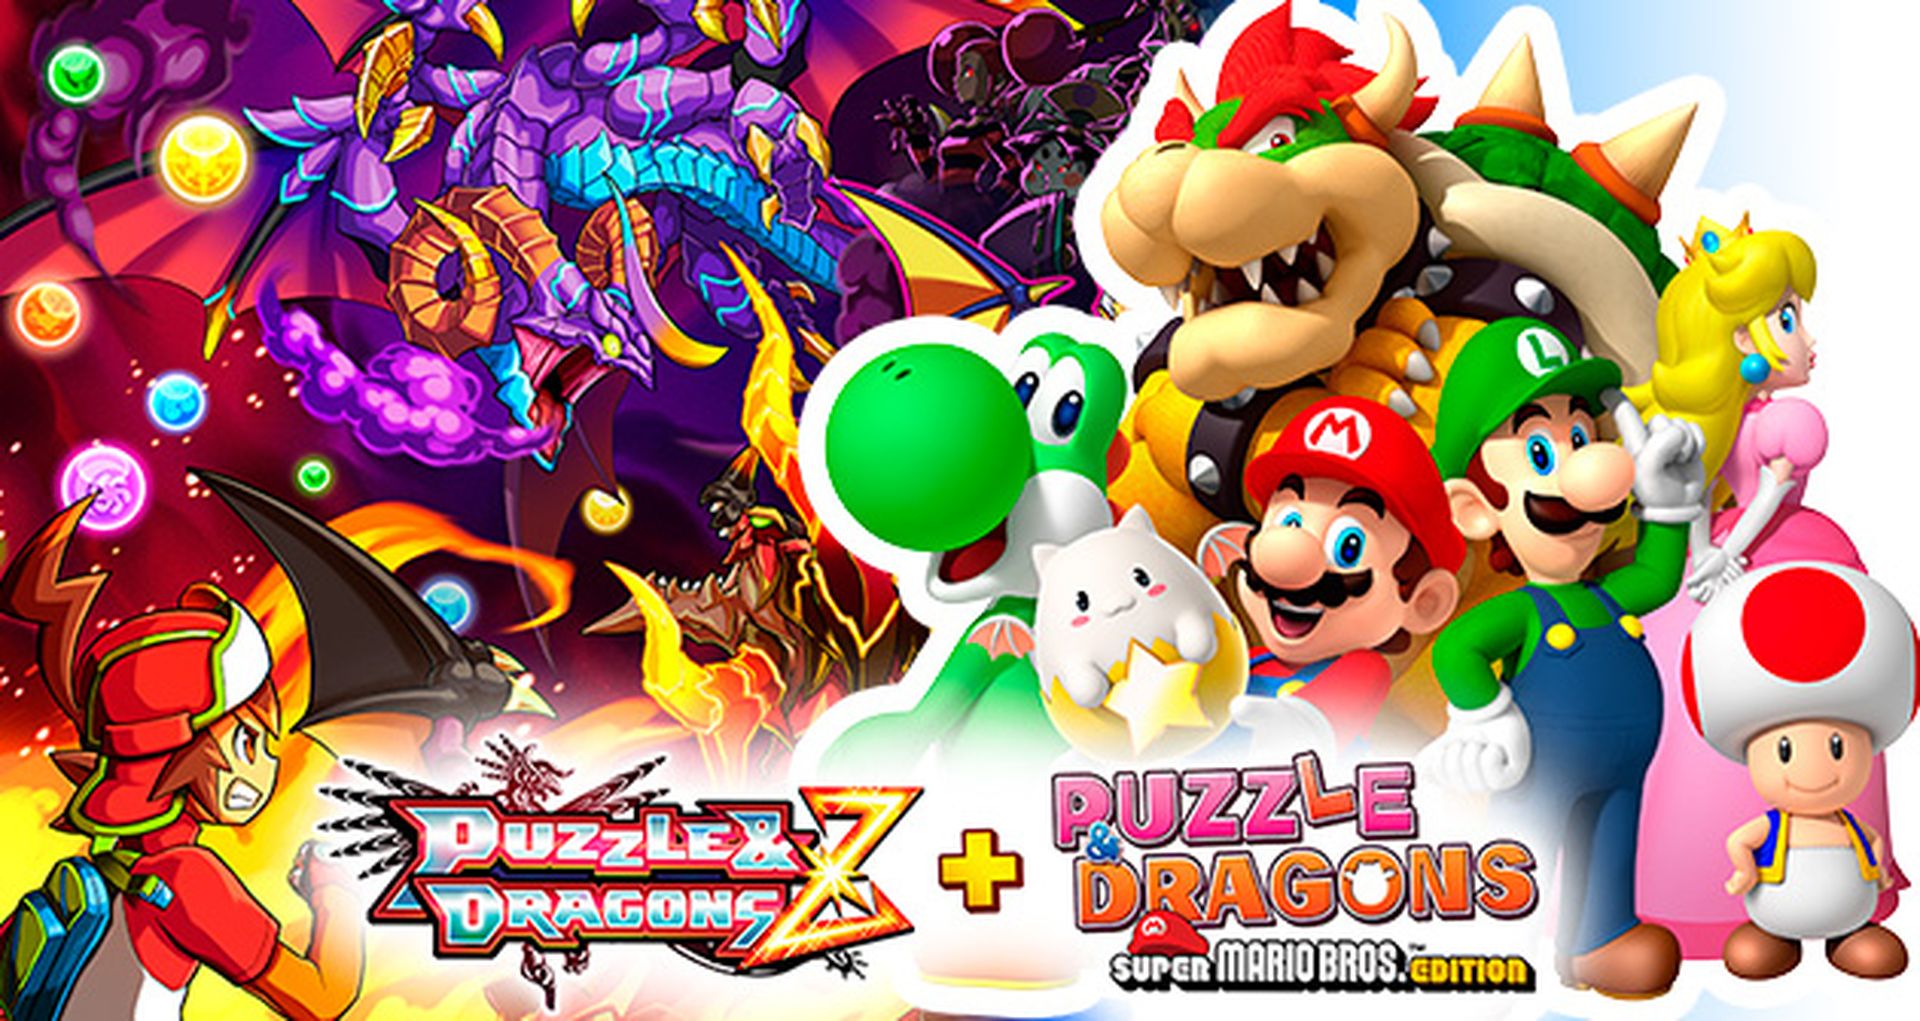 Puzzle &amp; Dragons Z + Super Mario Bros. Edition